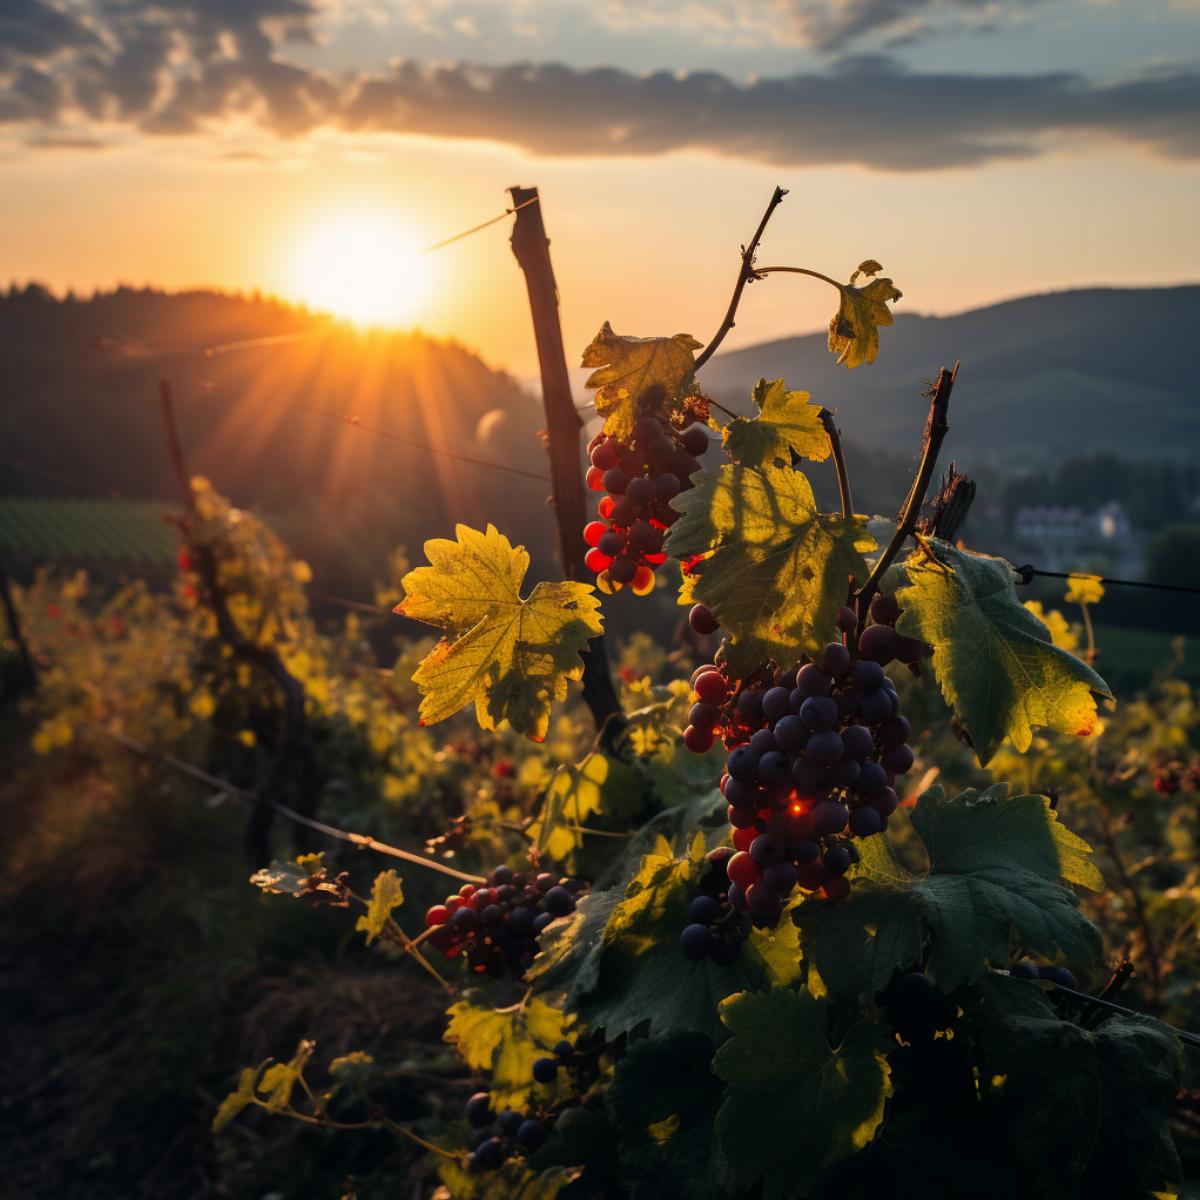 Le passage vers le bio pour les viticulteurs d'Alsace recquiert une modification des méthodes de travail, de production et de conservation